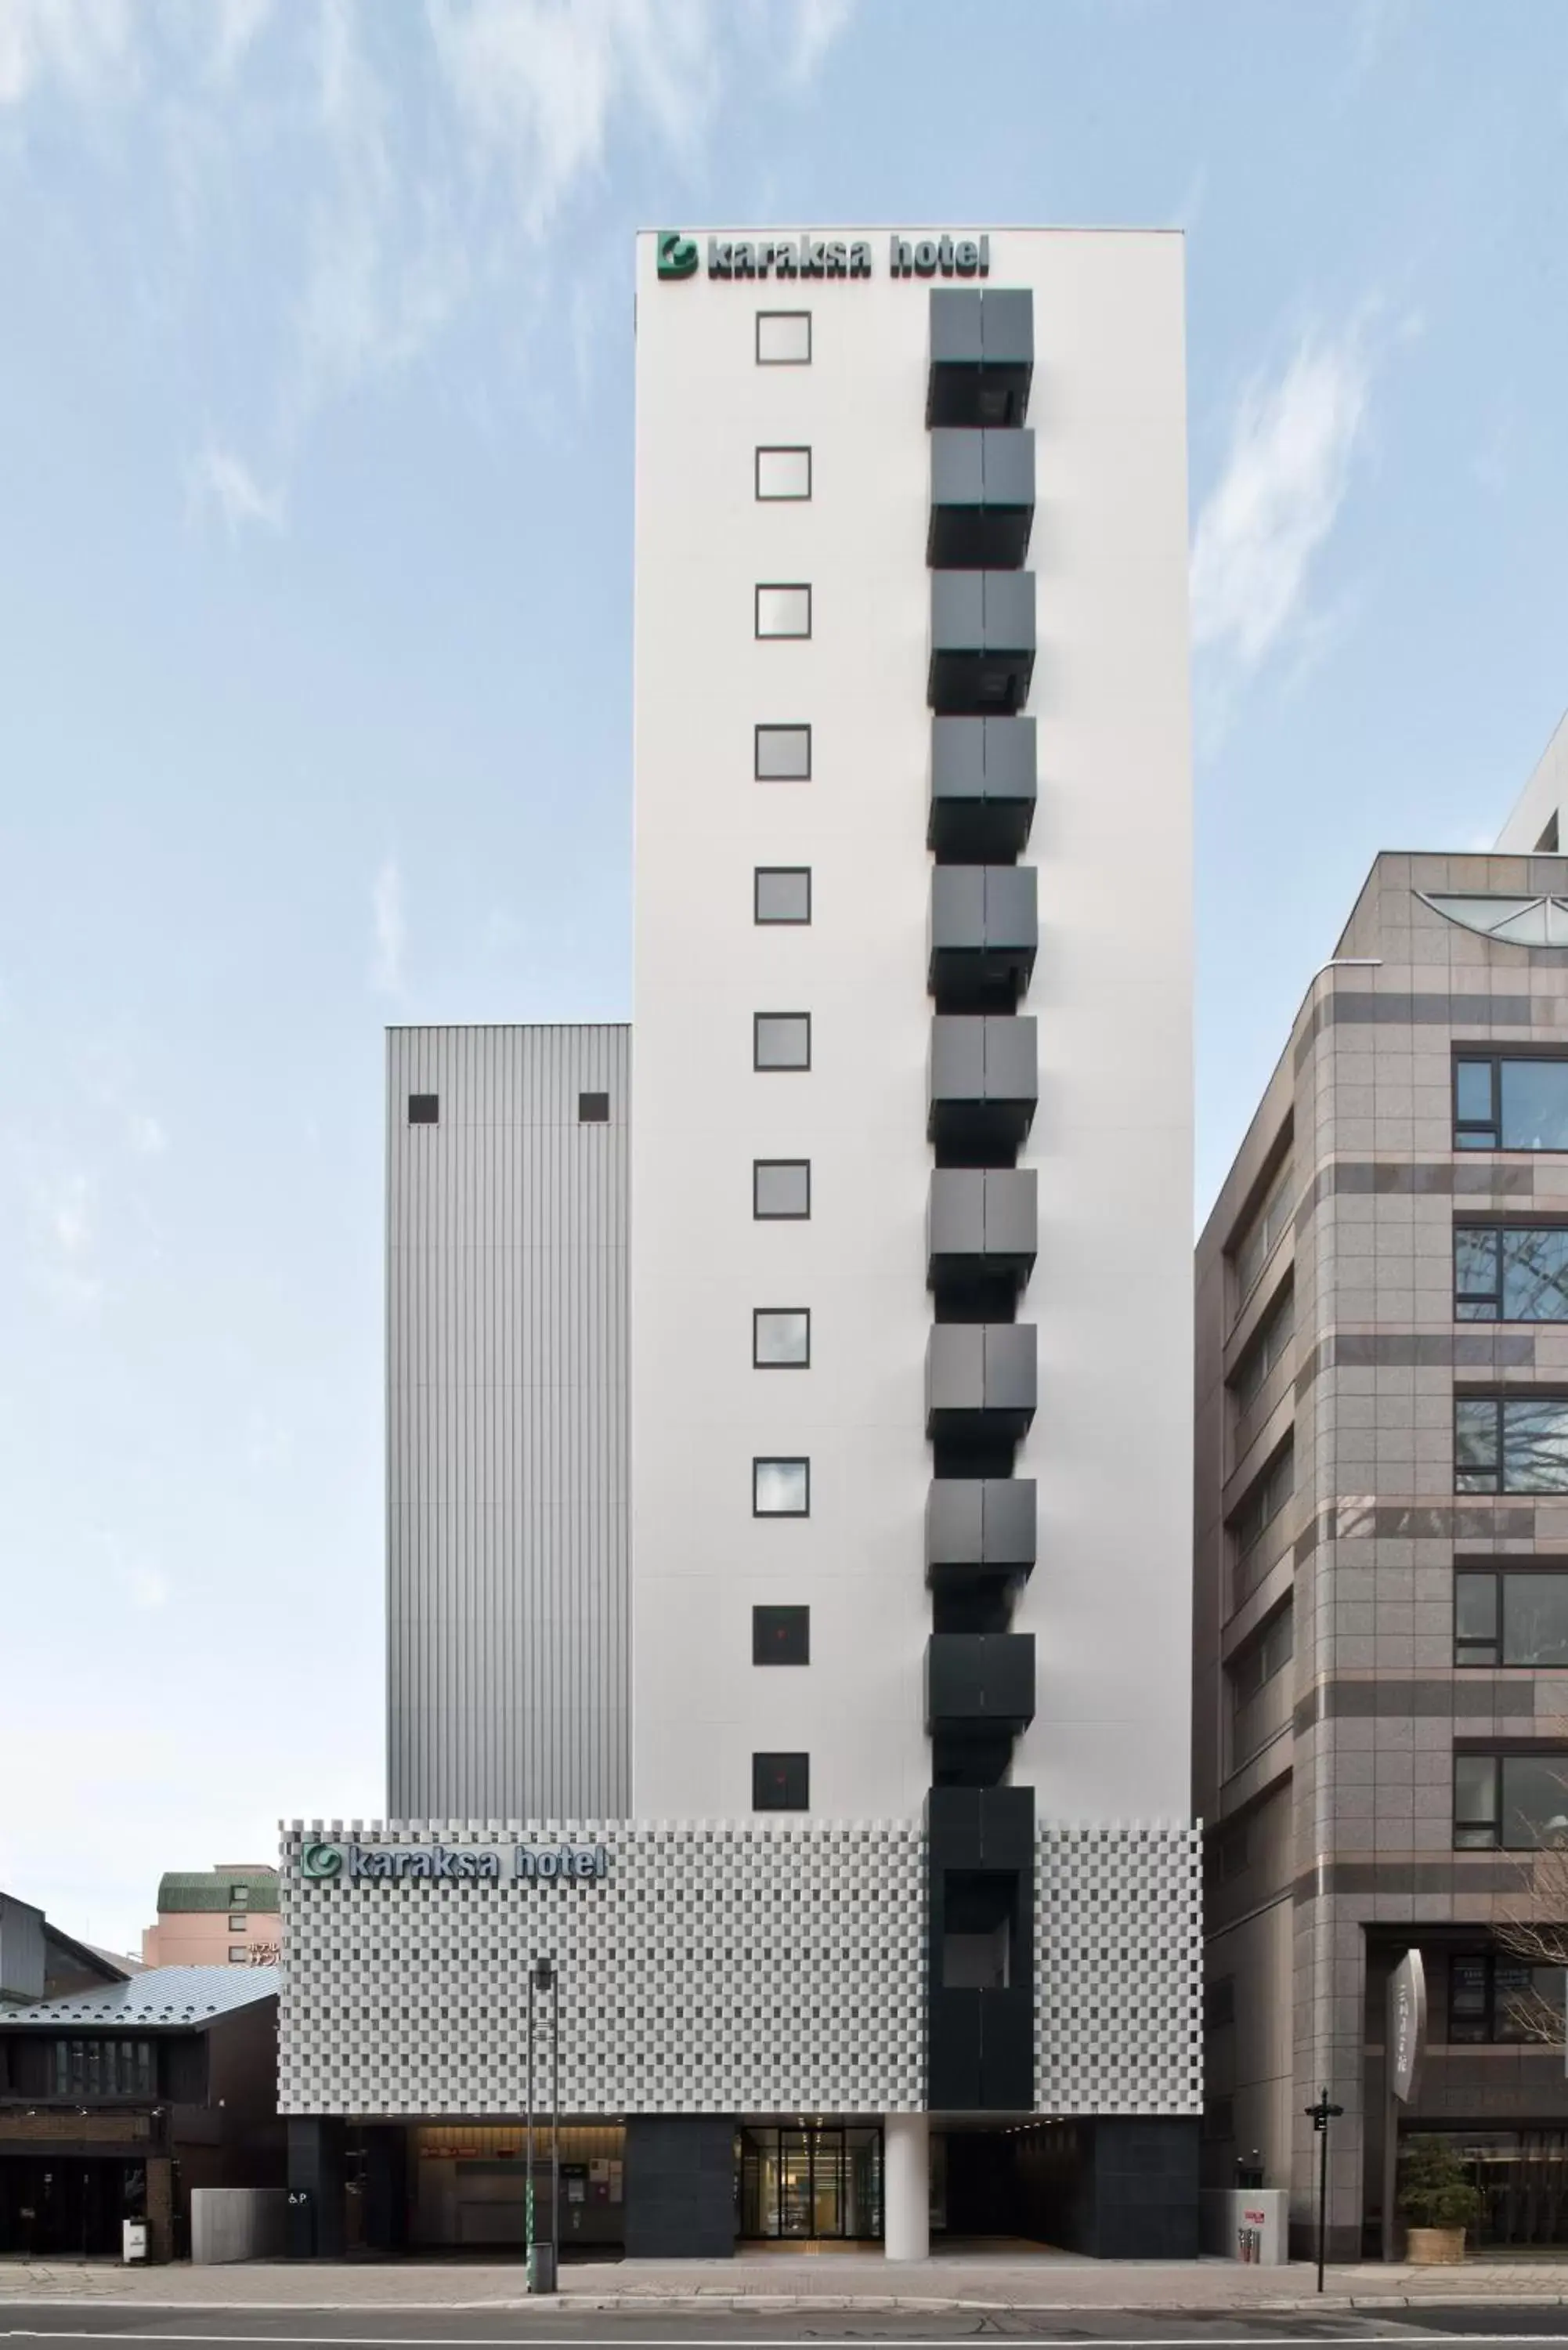 Property Building in karaksa hotel Sapporo